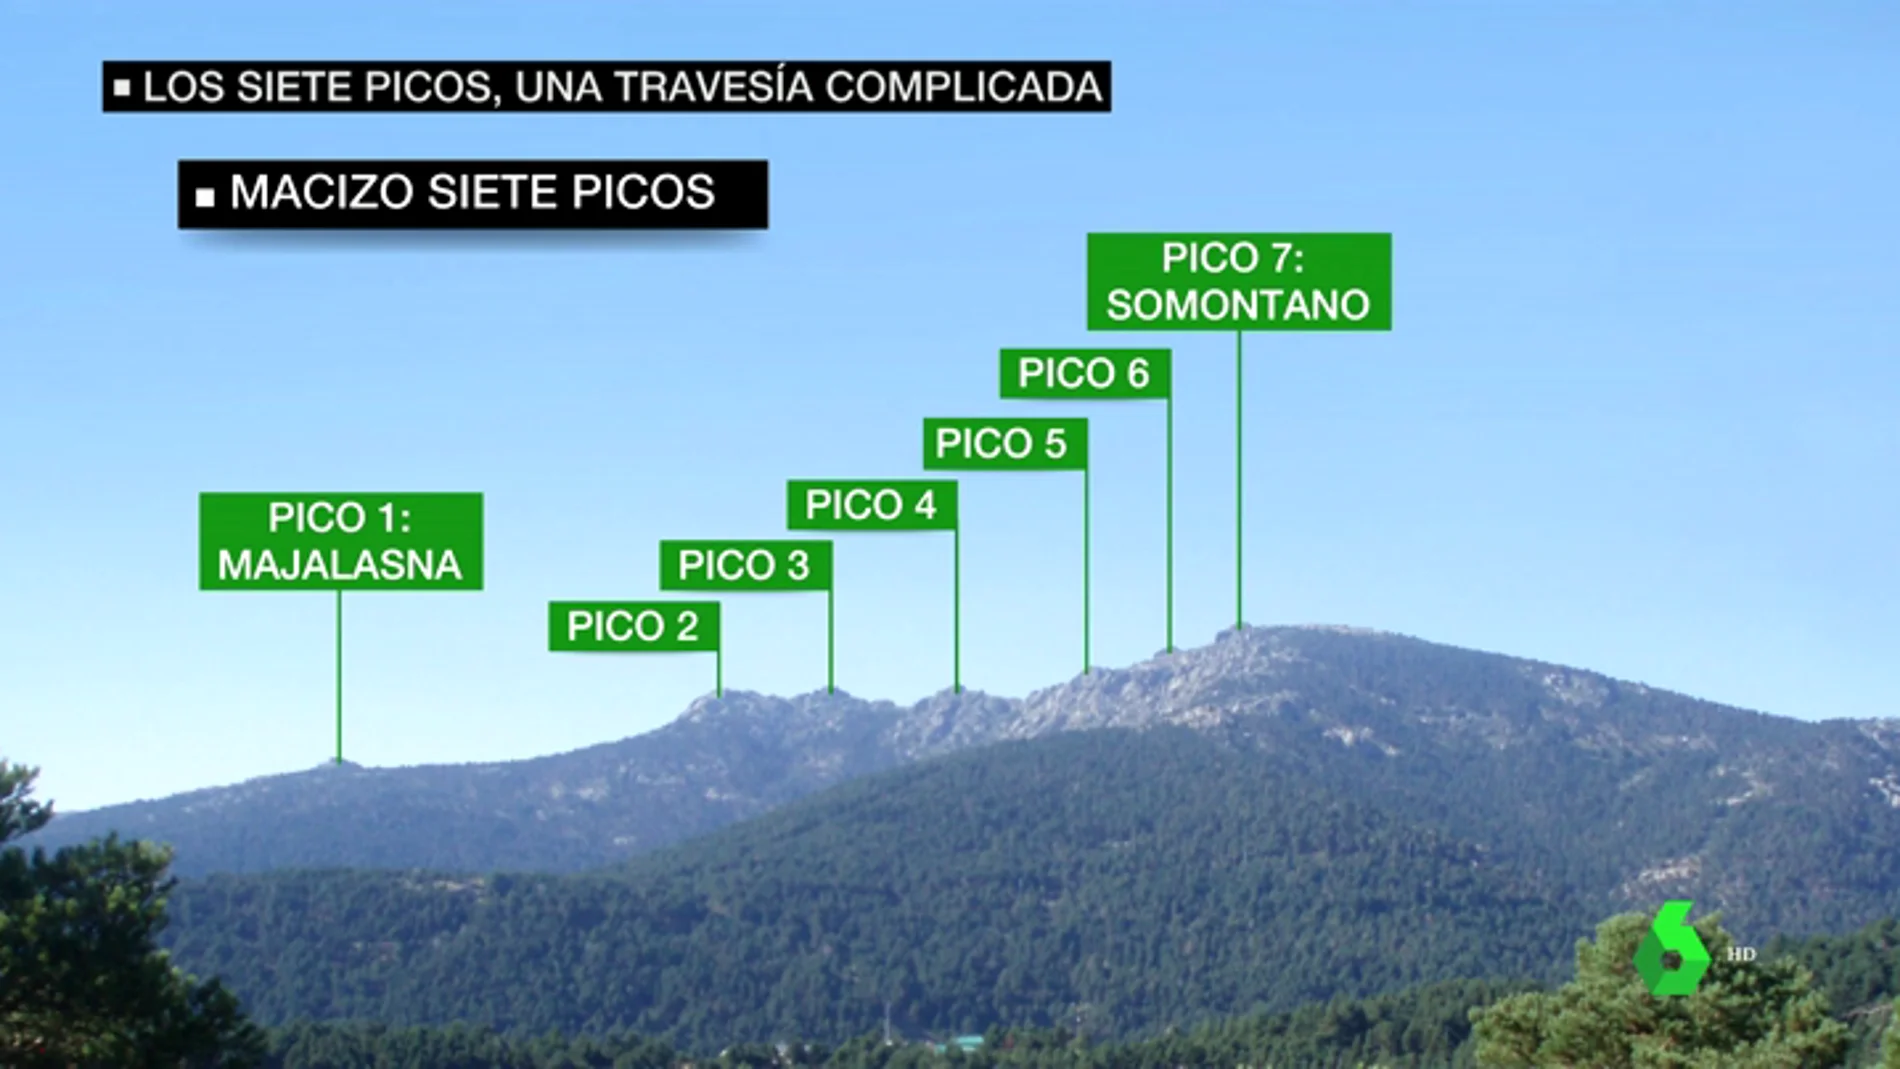 Así es la zona en la que la familia cree que se encuentra Blanca Fernández Ochoa: un punto negro de los Siete Picos lleno de vegetación